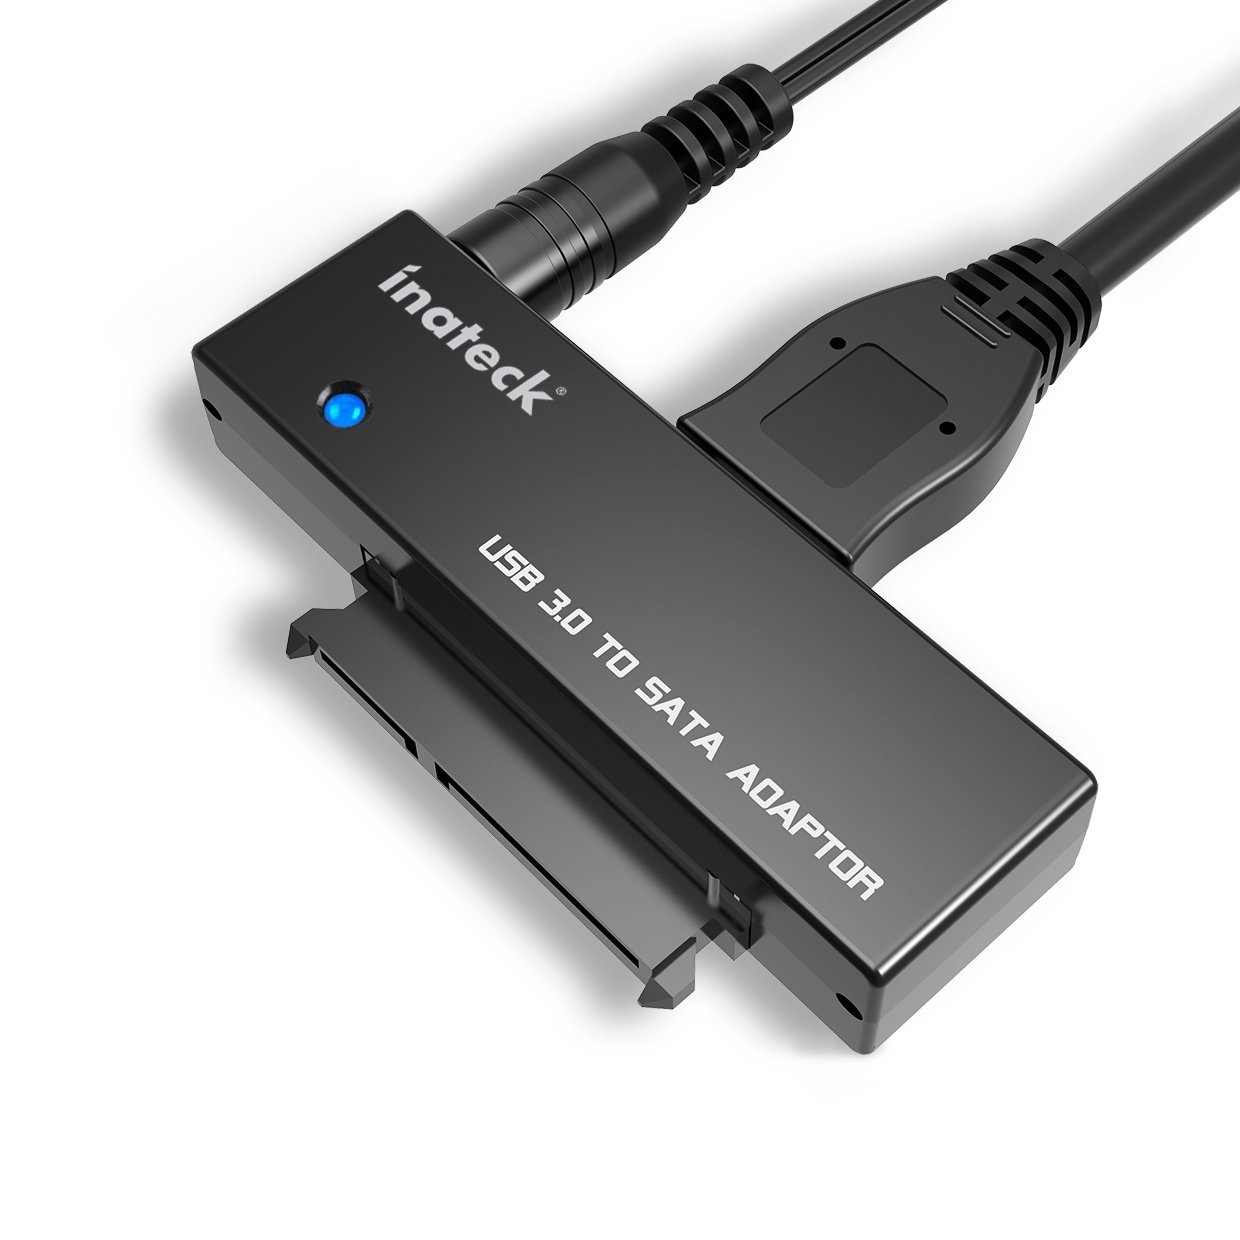 Cavo USB 3.0 a SATA con funzione UASP ora in sconto a 14,99 euro